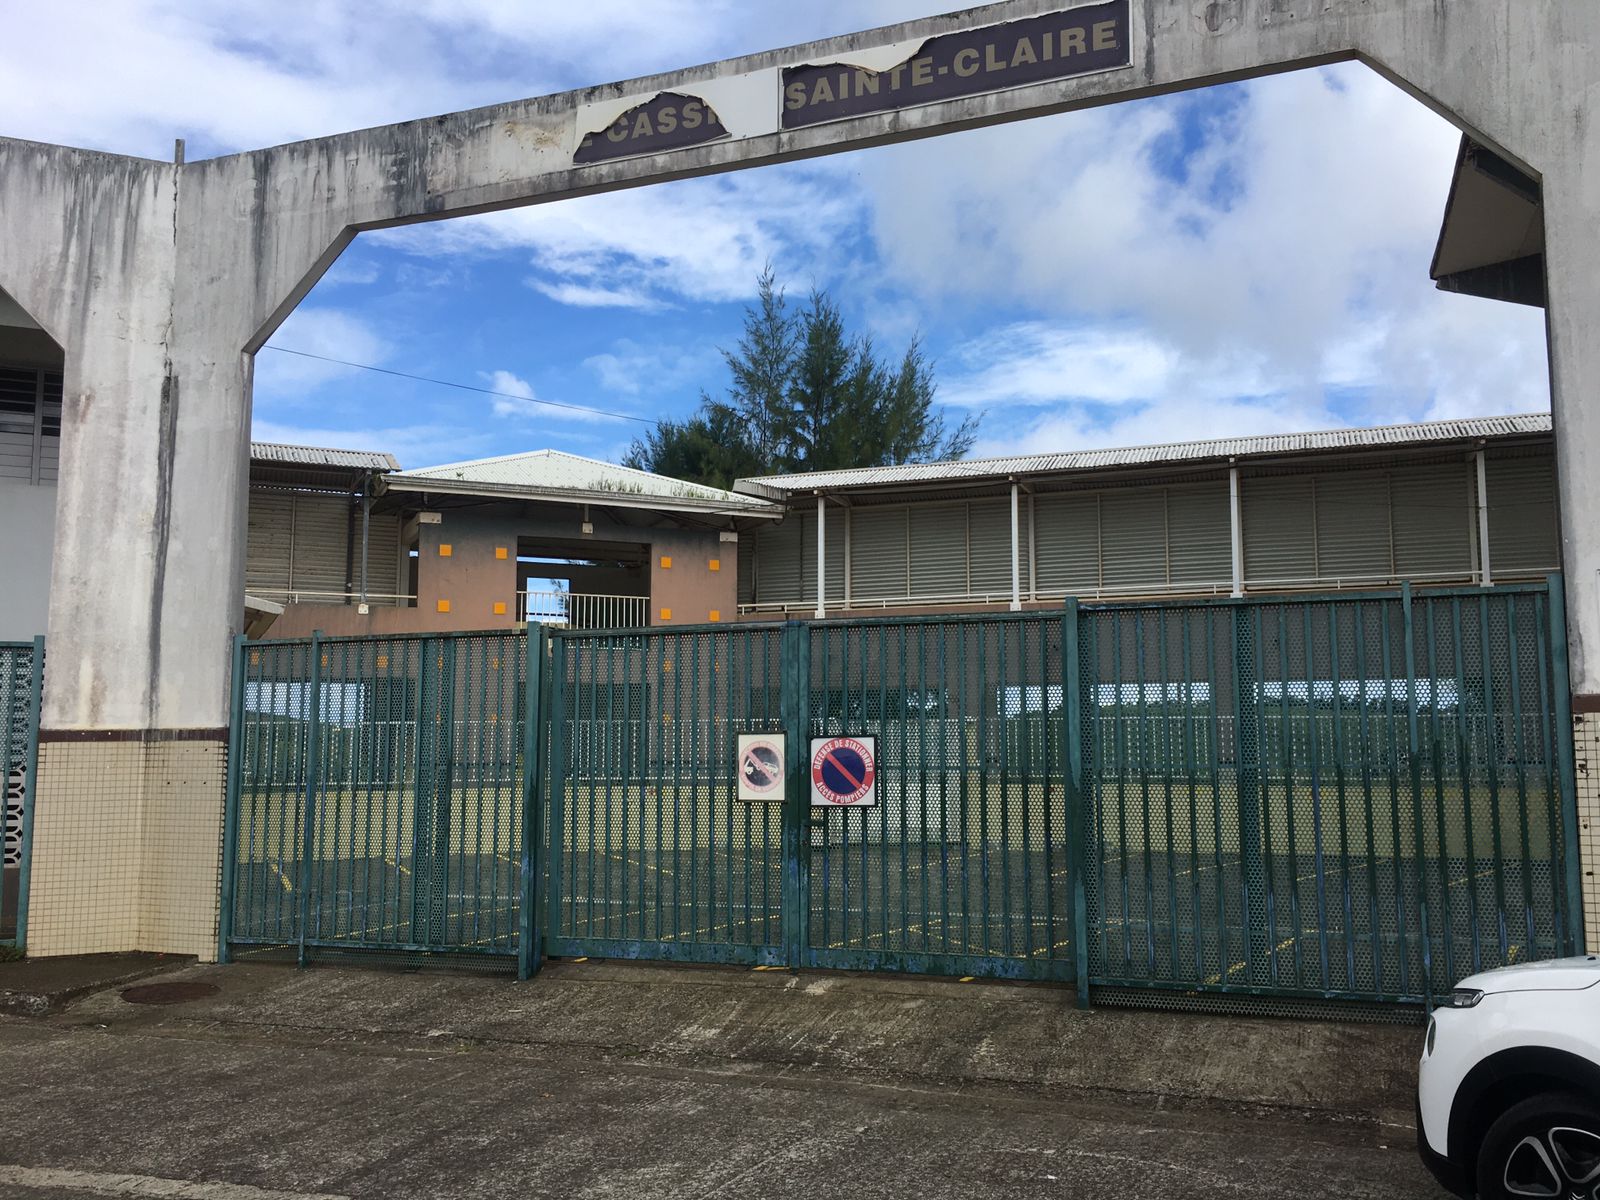     Pillage : le collège Cassien Sainte-Claire à Fort-de-France pris pour cible ce week-end

